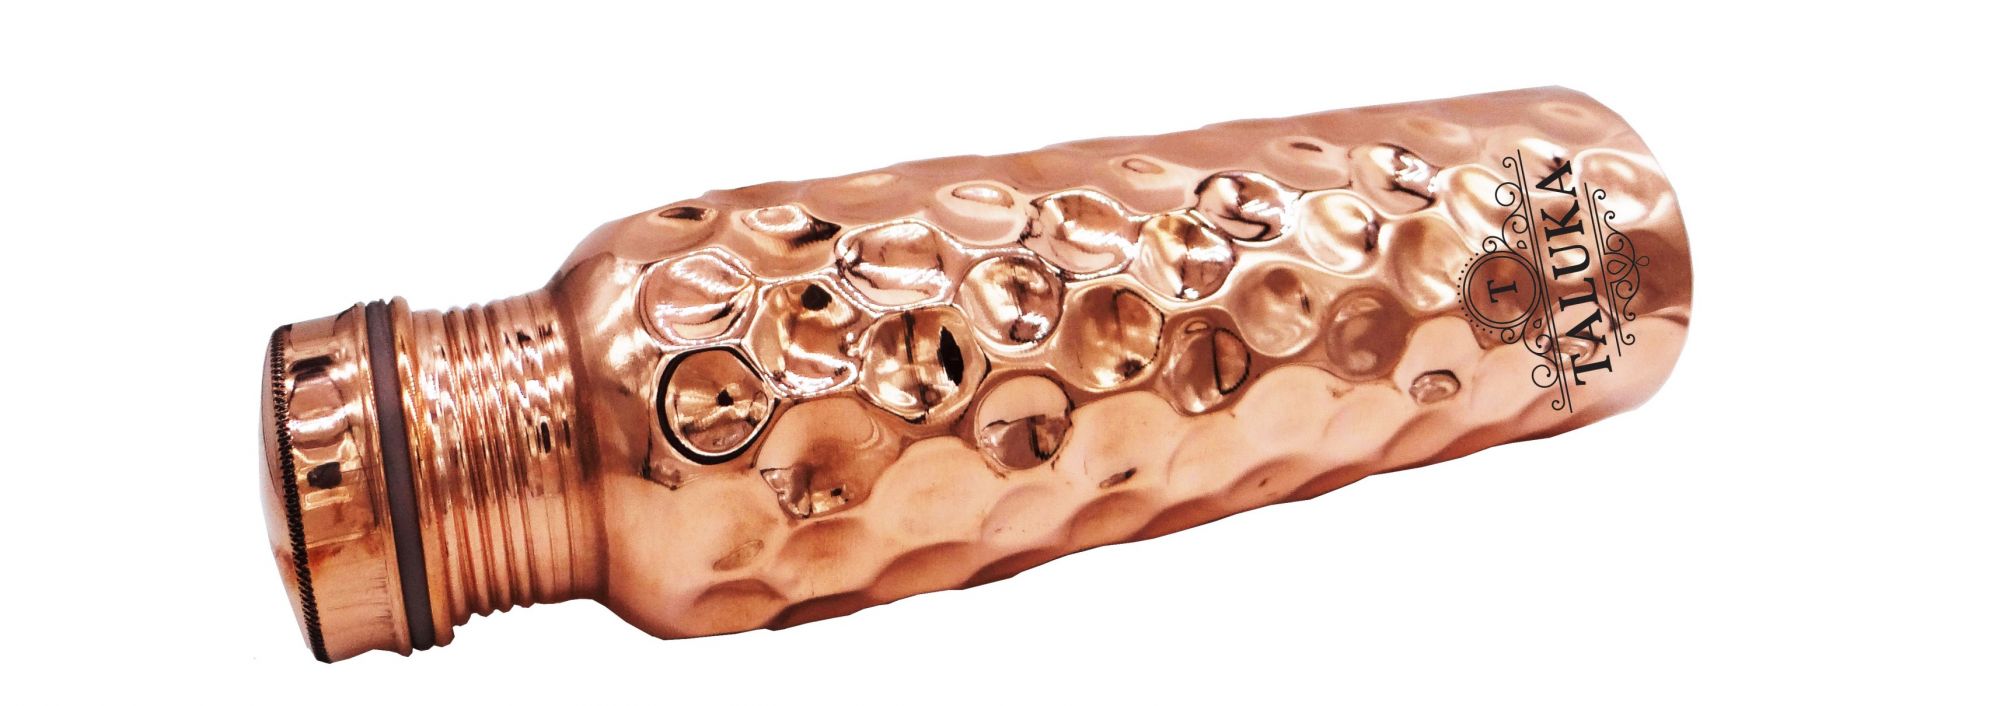 Copper Hammered Diamond Design Drinking Water Bottle 1000 ML